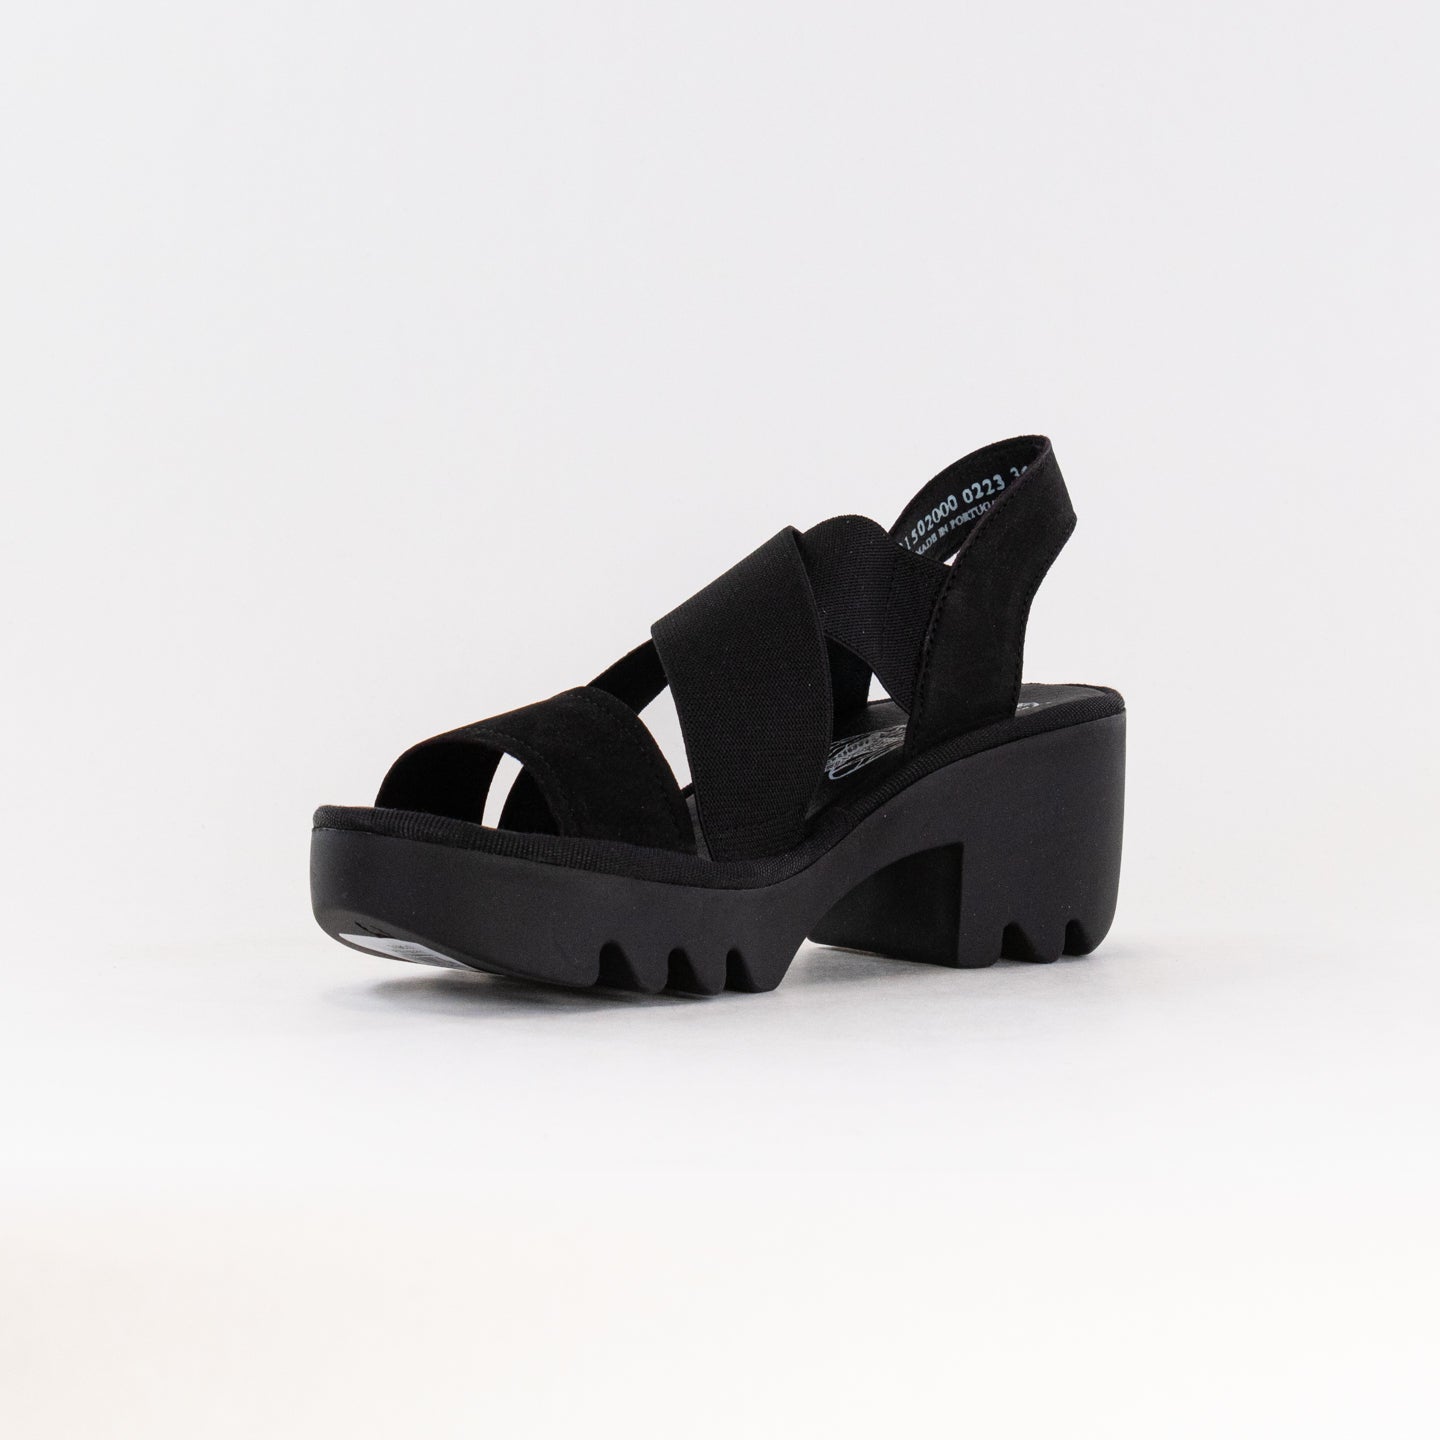 FLY London Crossover Sandals TAJI502FLY (Women's) - Black